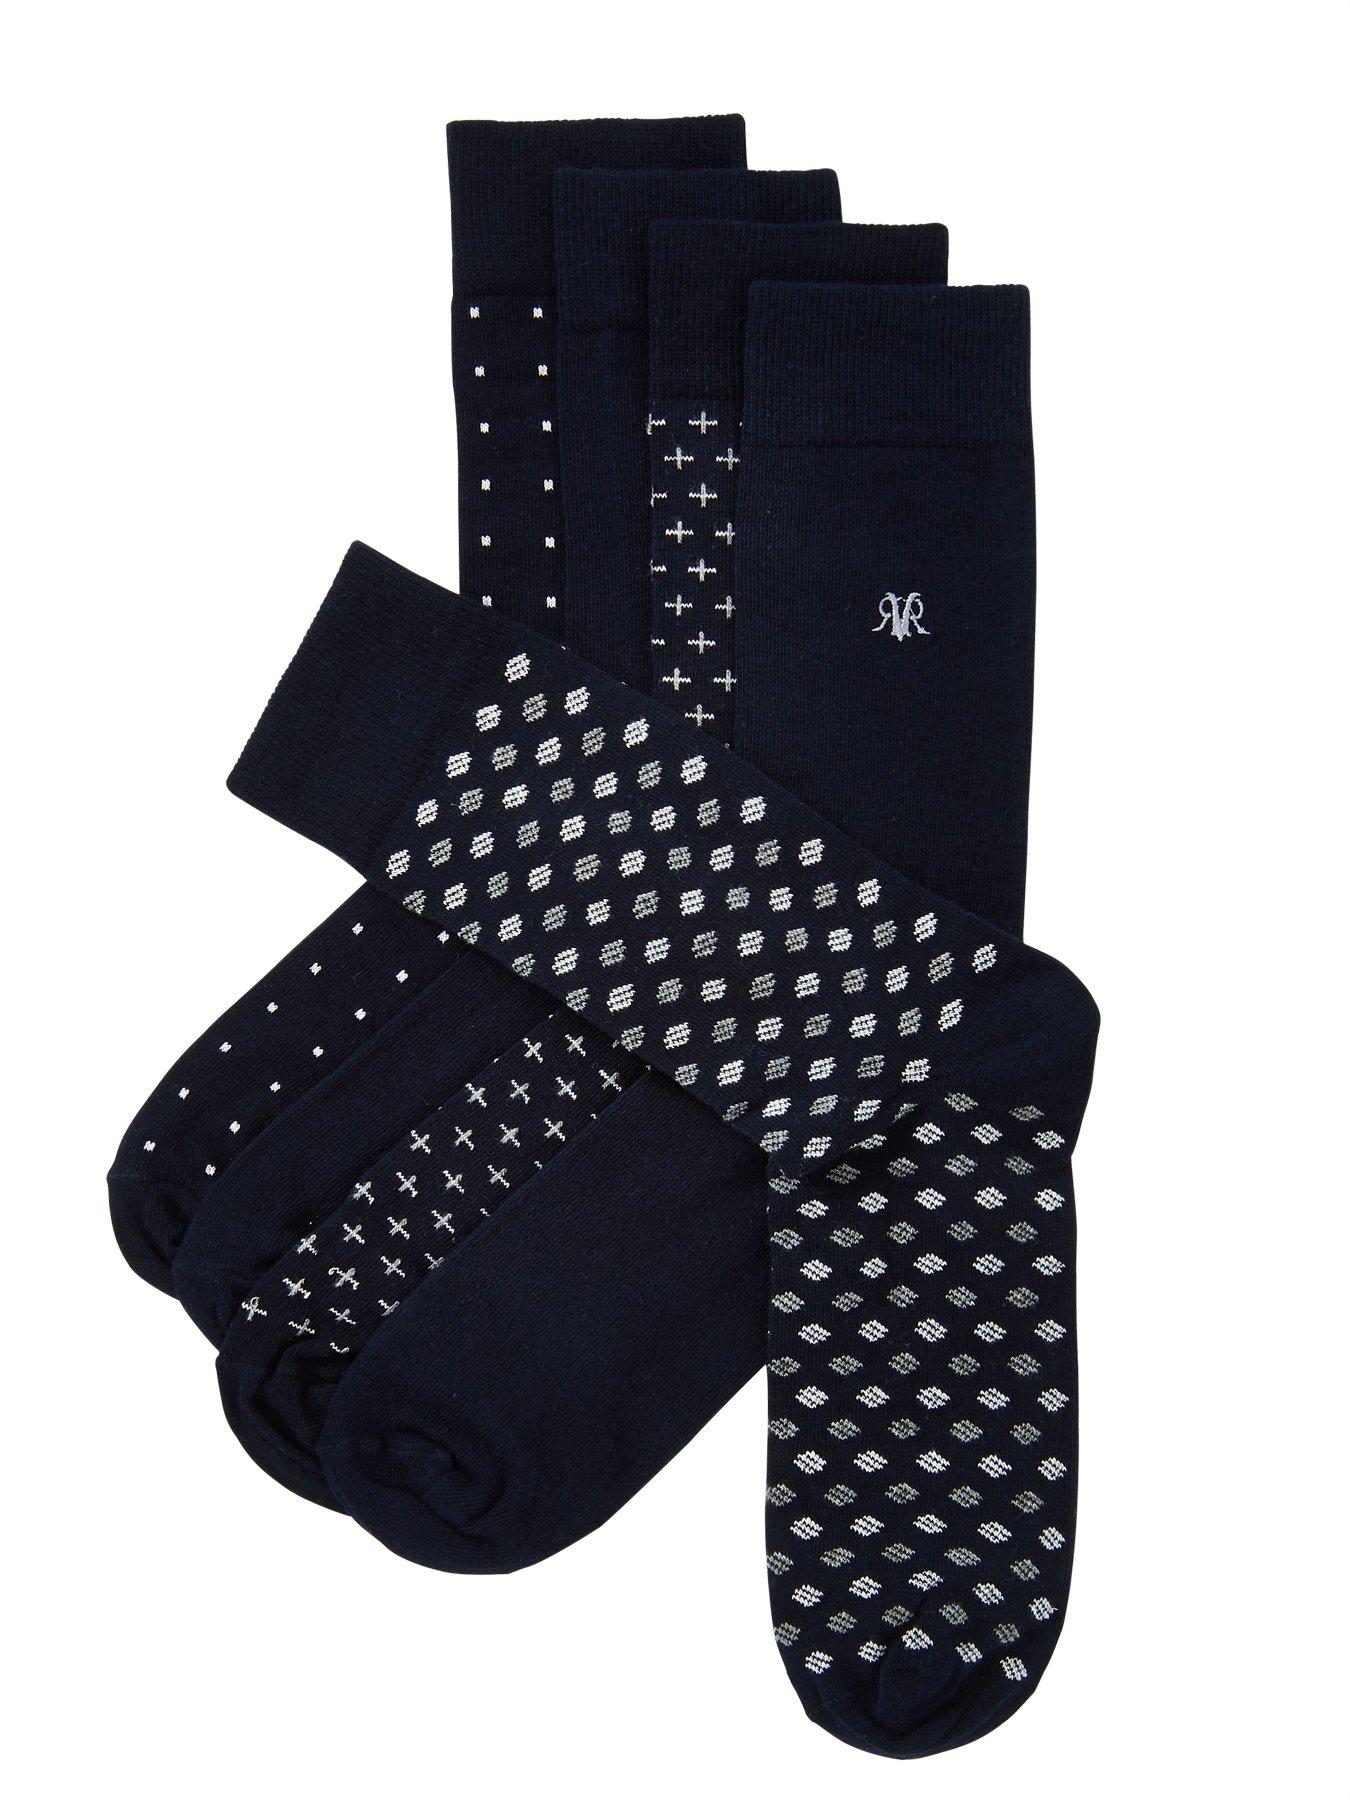 Nike Elite Socks Leg Color Change For Socks Roblox Free Robux Codes September 2019 No Website Millionaires - white long socks roblox